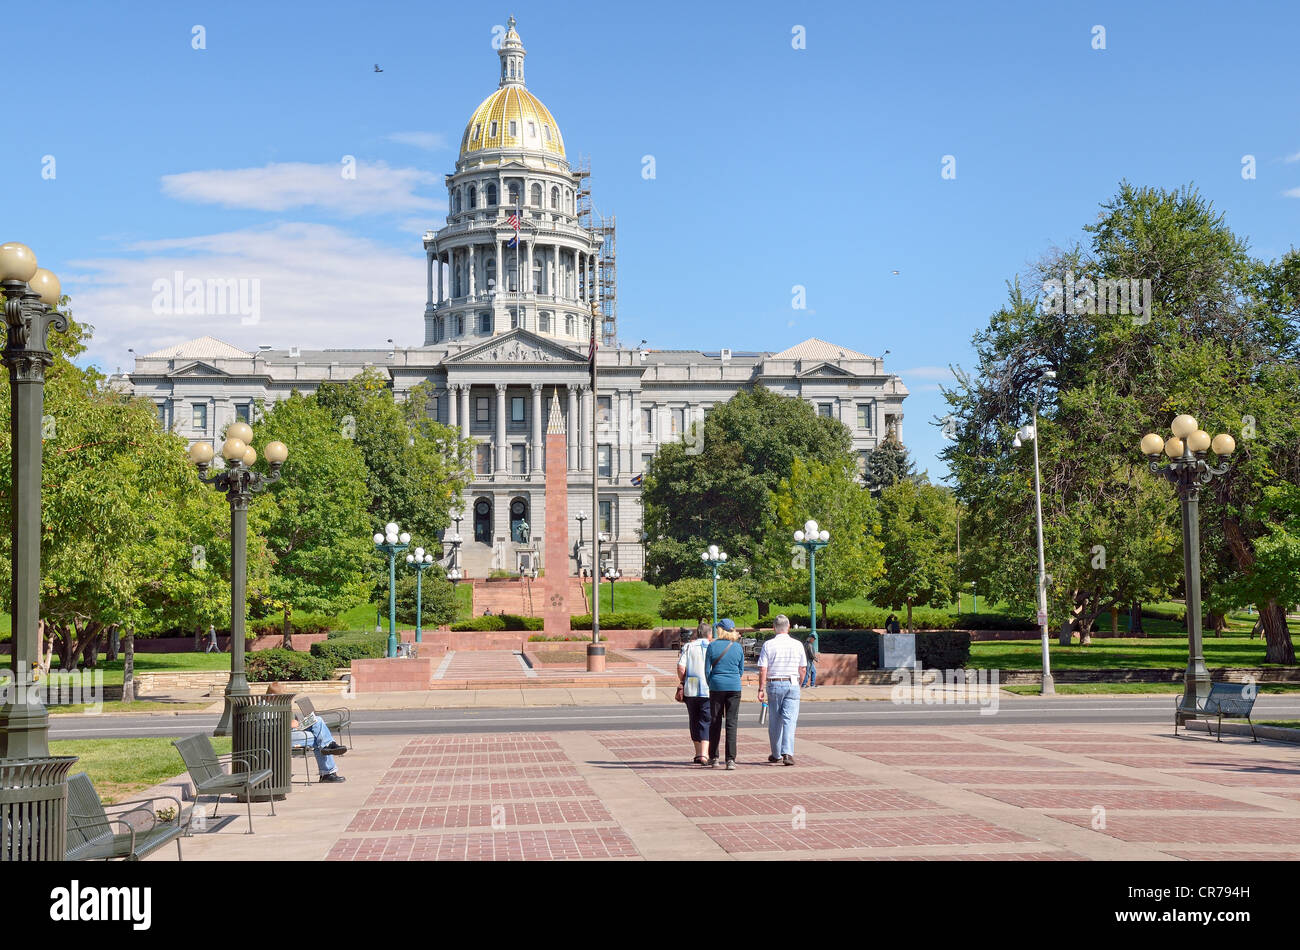 State Capitol at Civic Center Park, Denver, Colorado, USA Stock Photo